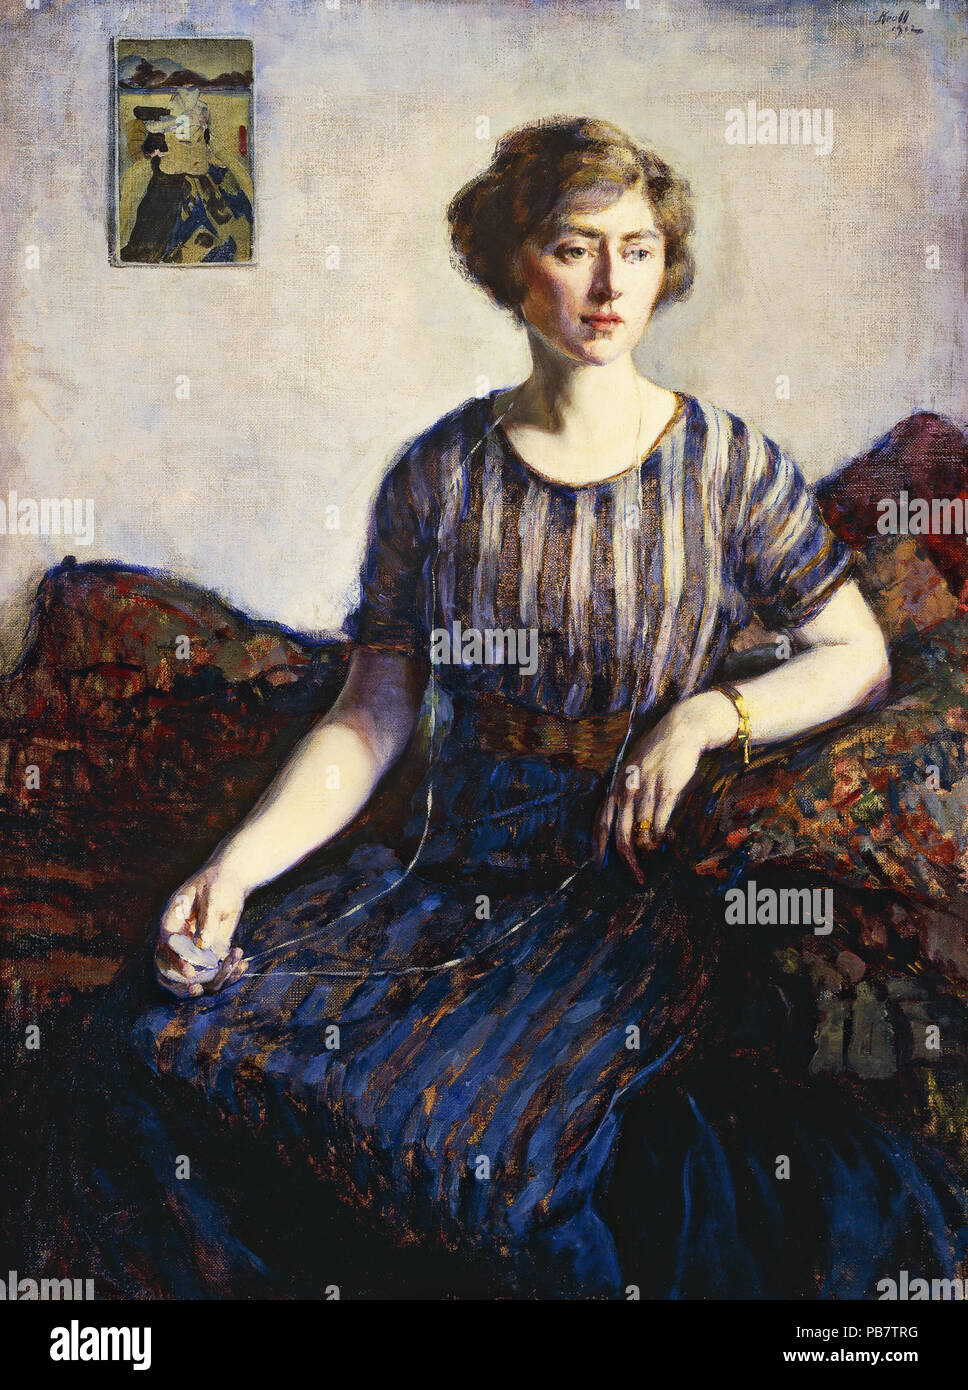 896 Leon Kroll - Tess Kroll Pergament, la soeur de l'artiste, 1912 Banque D'Images